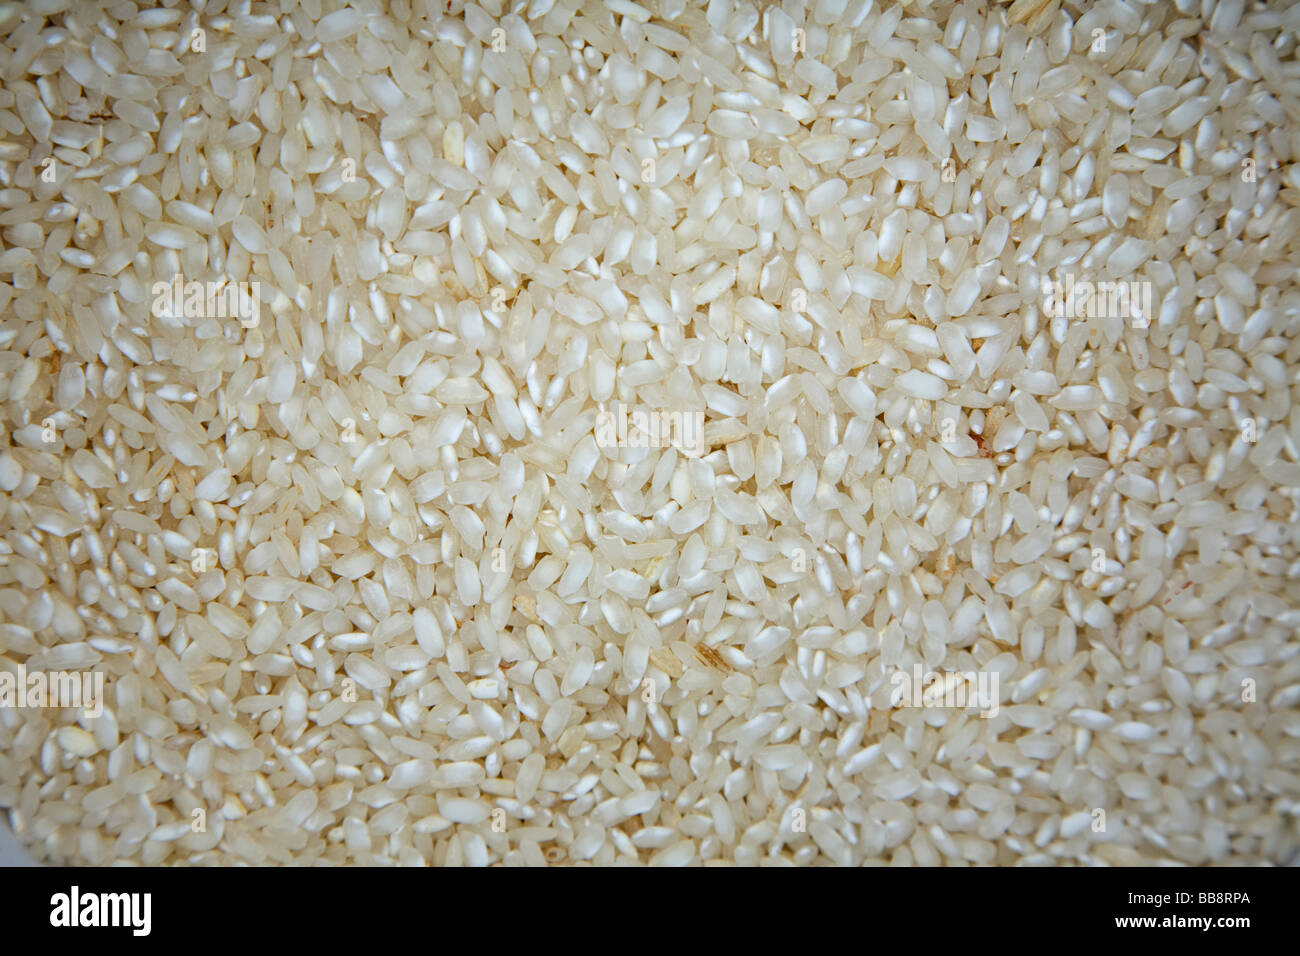 risotto paella rice Stock Photo